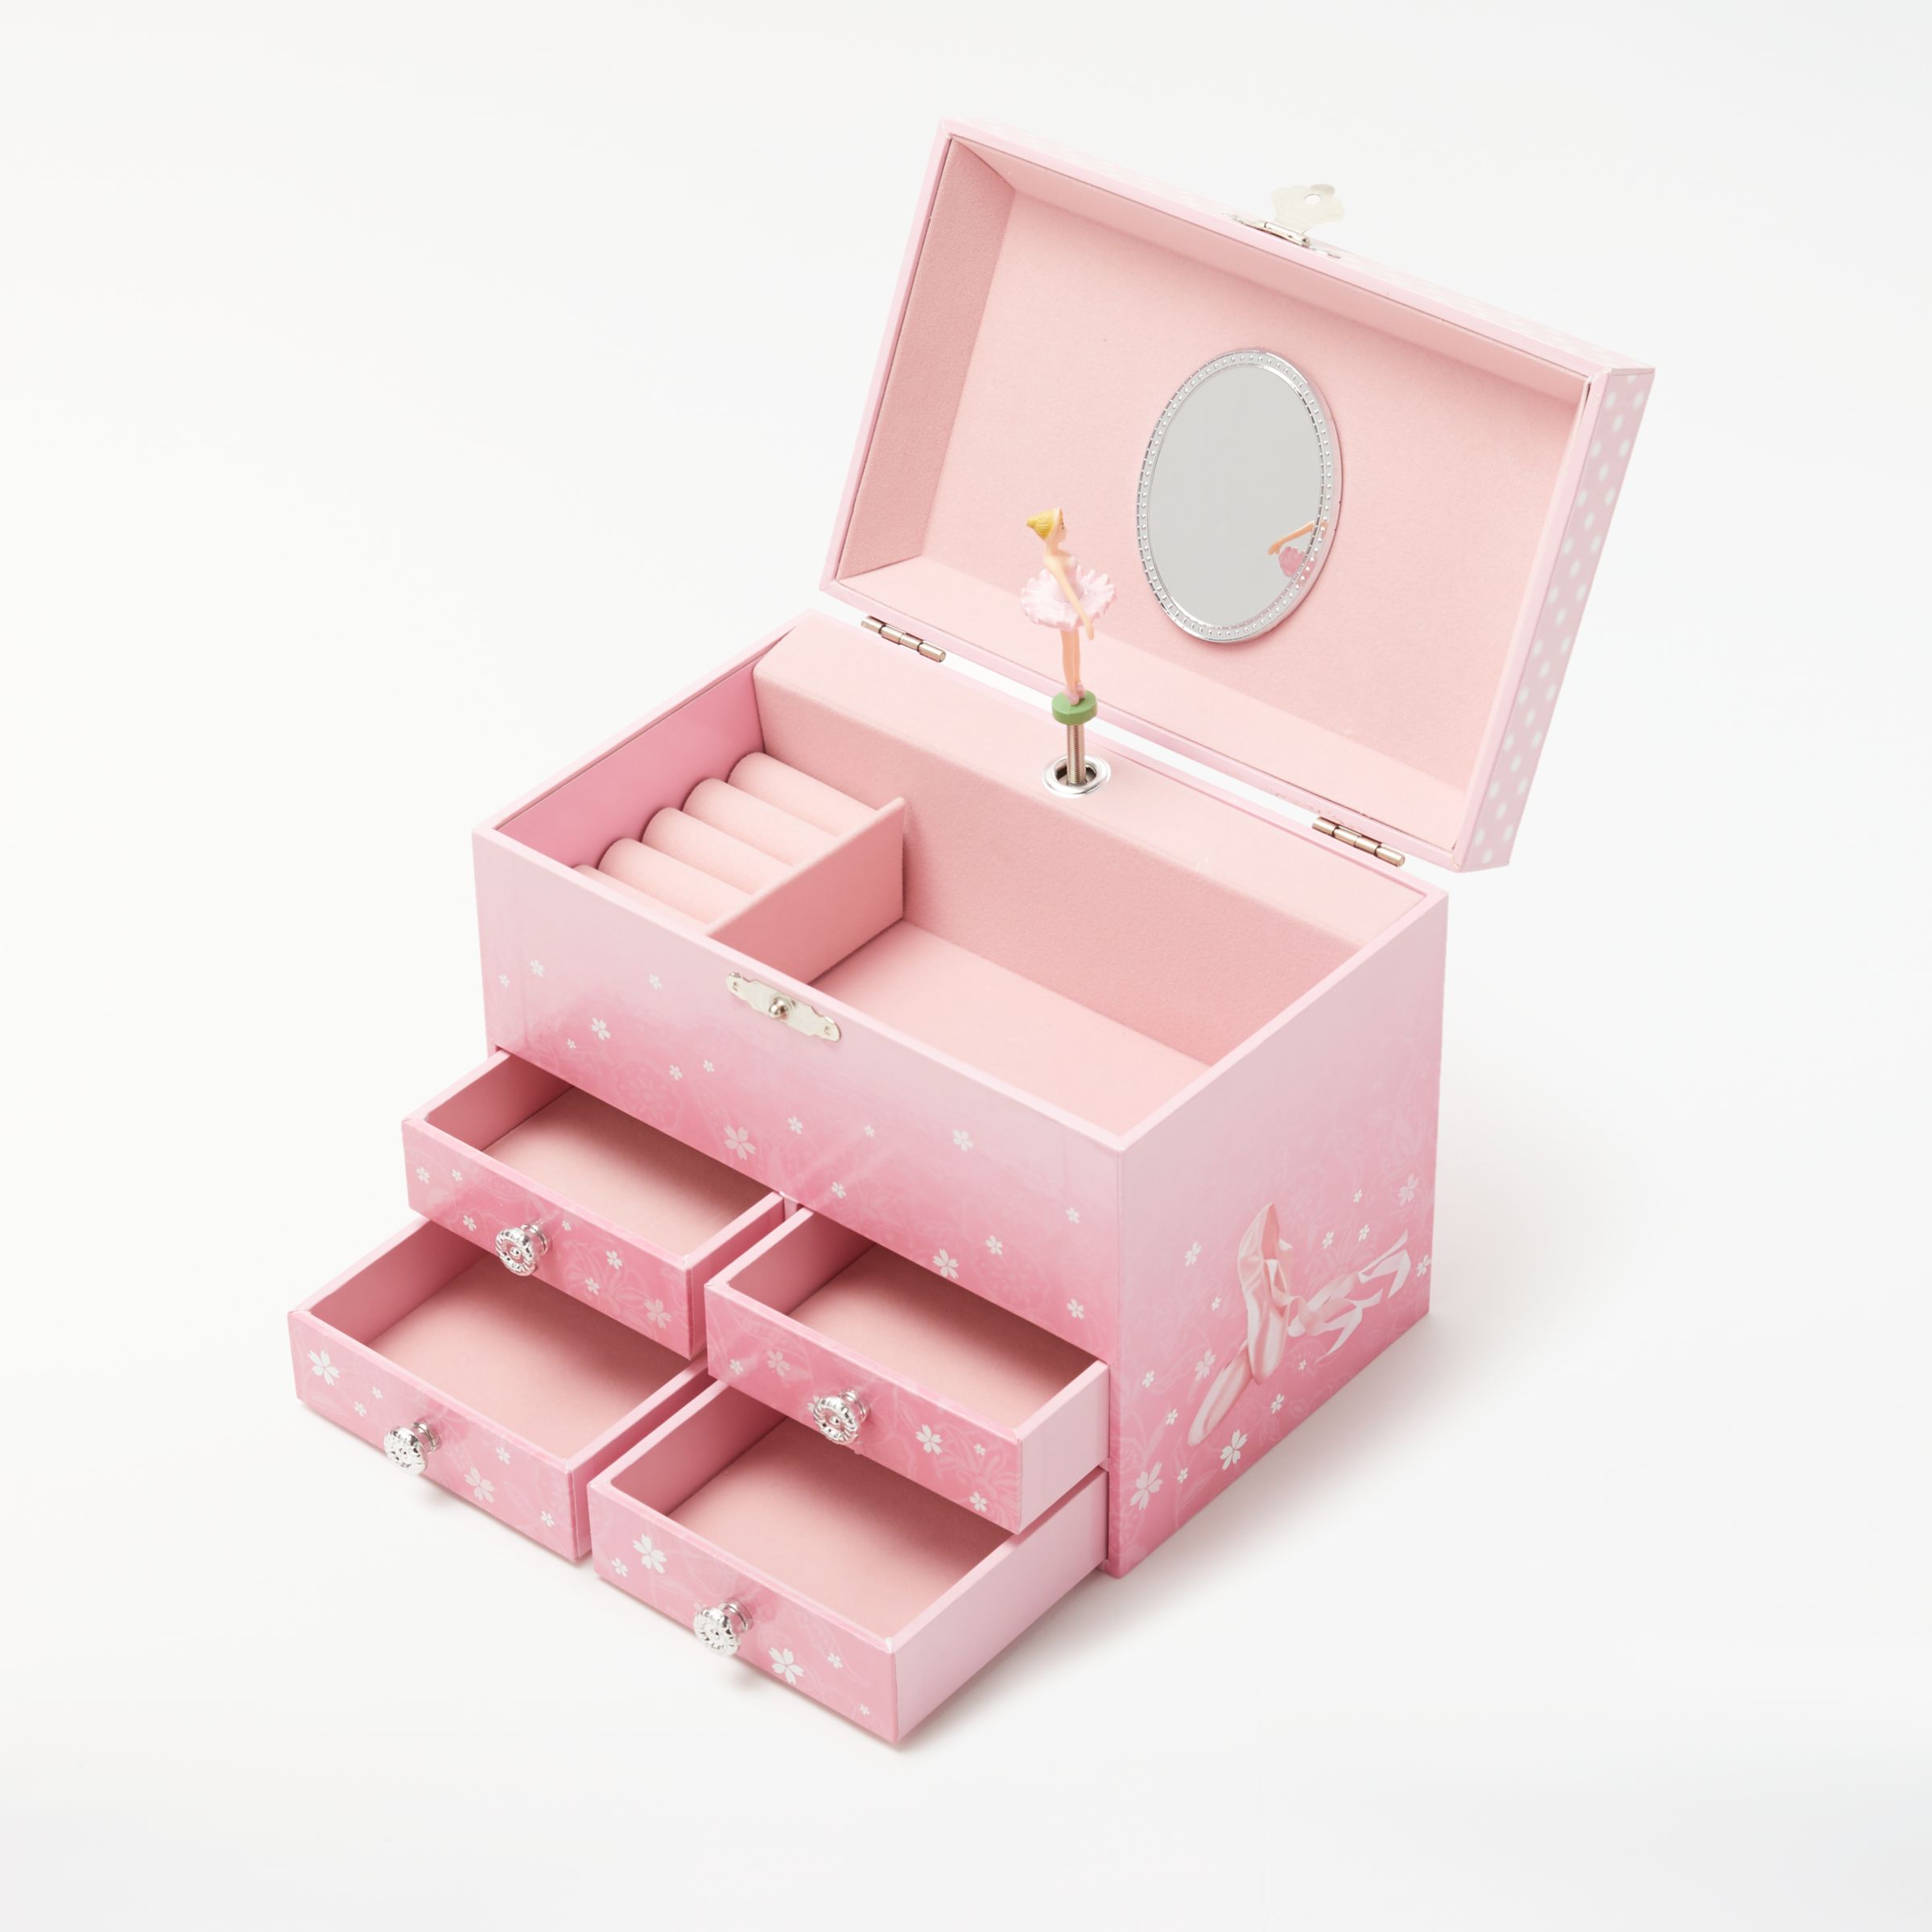 children's jewelry box with ballerina